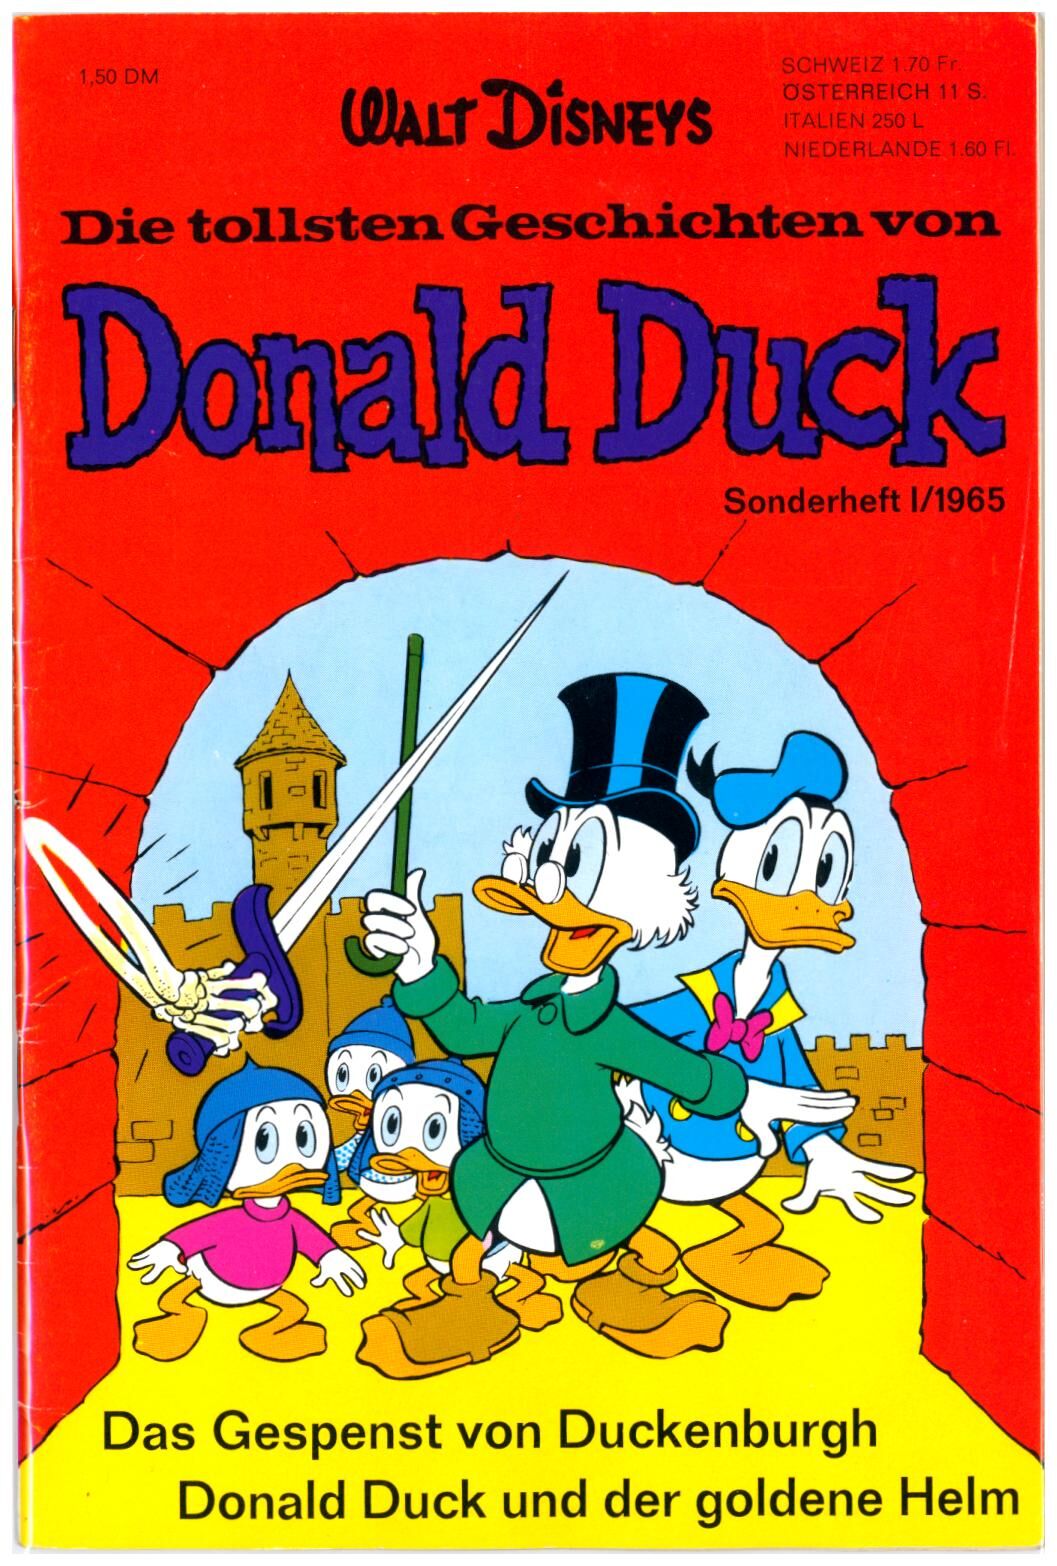 Die tollsten Geschichten von Donald Duck #1